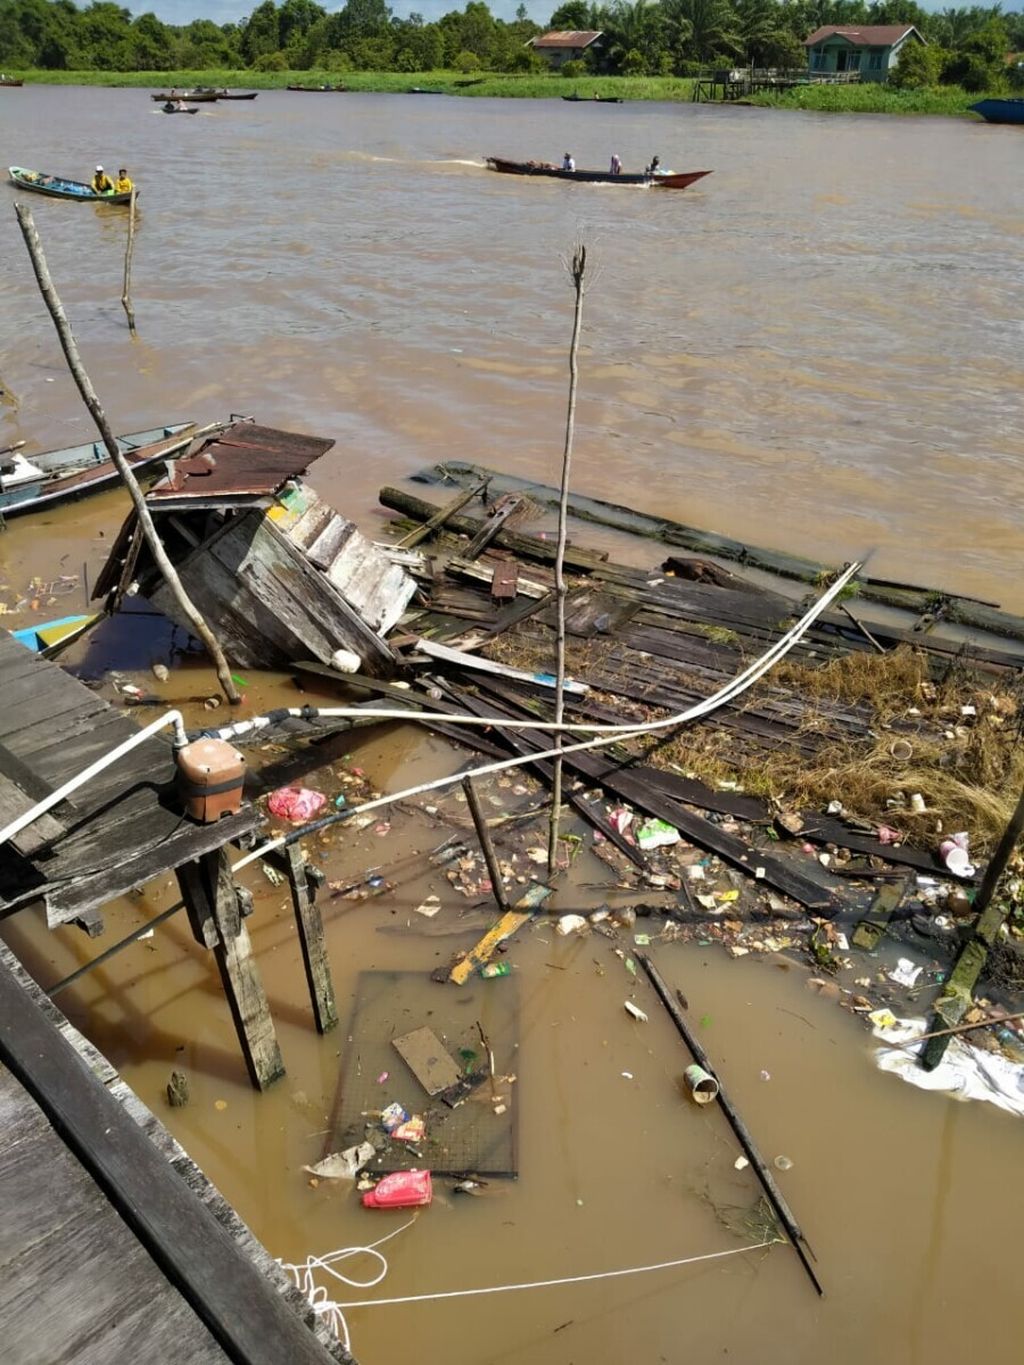 Sebuah rumah lanting atau rumah apung yang rusak dan tenggelam lantaran ledakan yang terjadi pada tongkang yang ditambat tak jauh dari rumah itu, di Sungai Arut, Kabupaten Kotawaringin Barat, Kalimantan Tengah, Senin (5/7/2021).